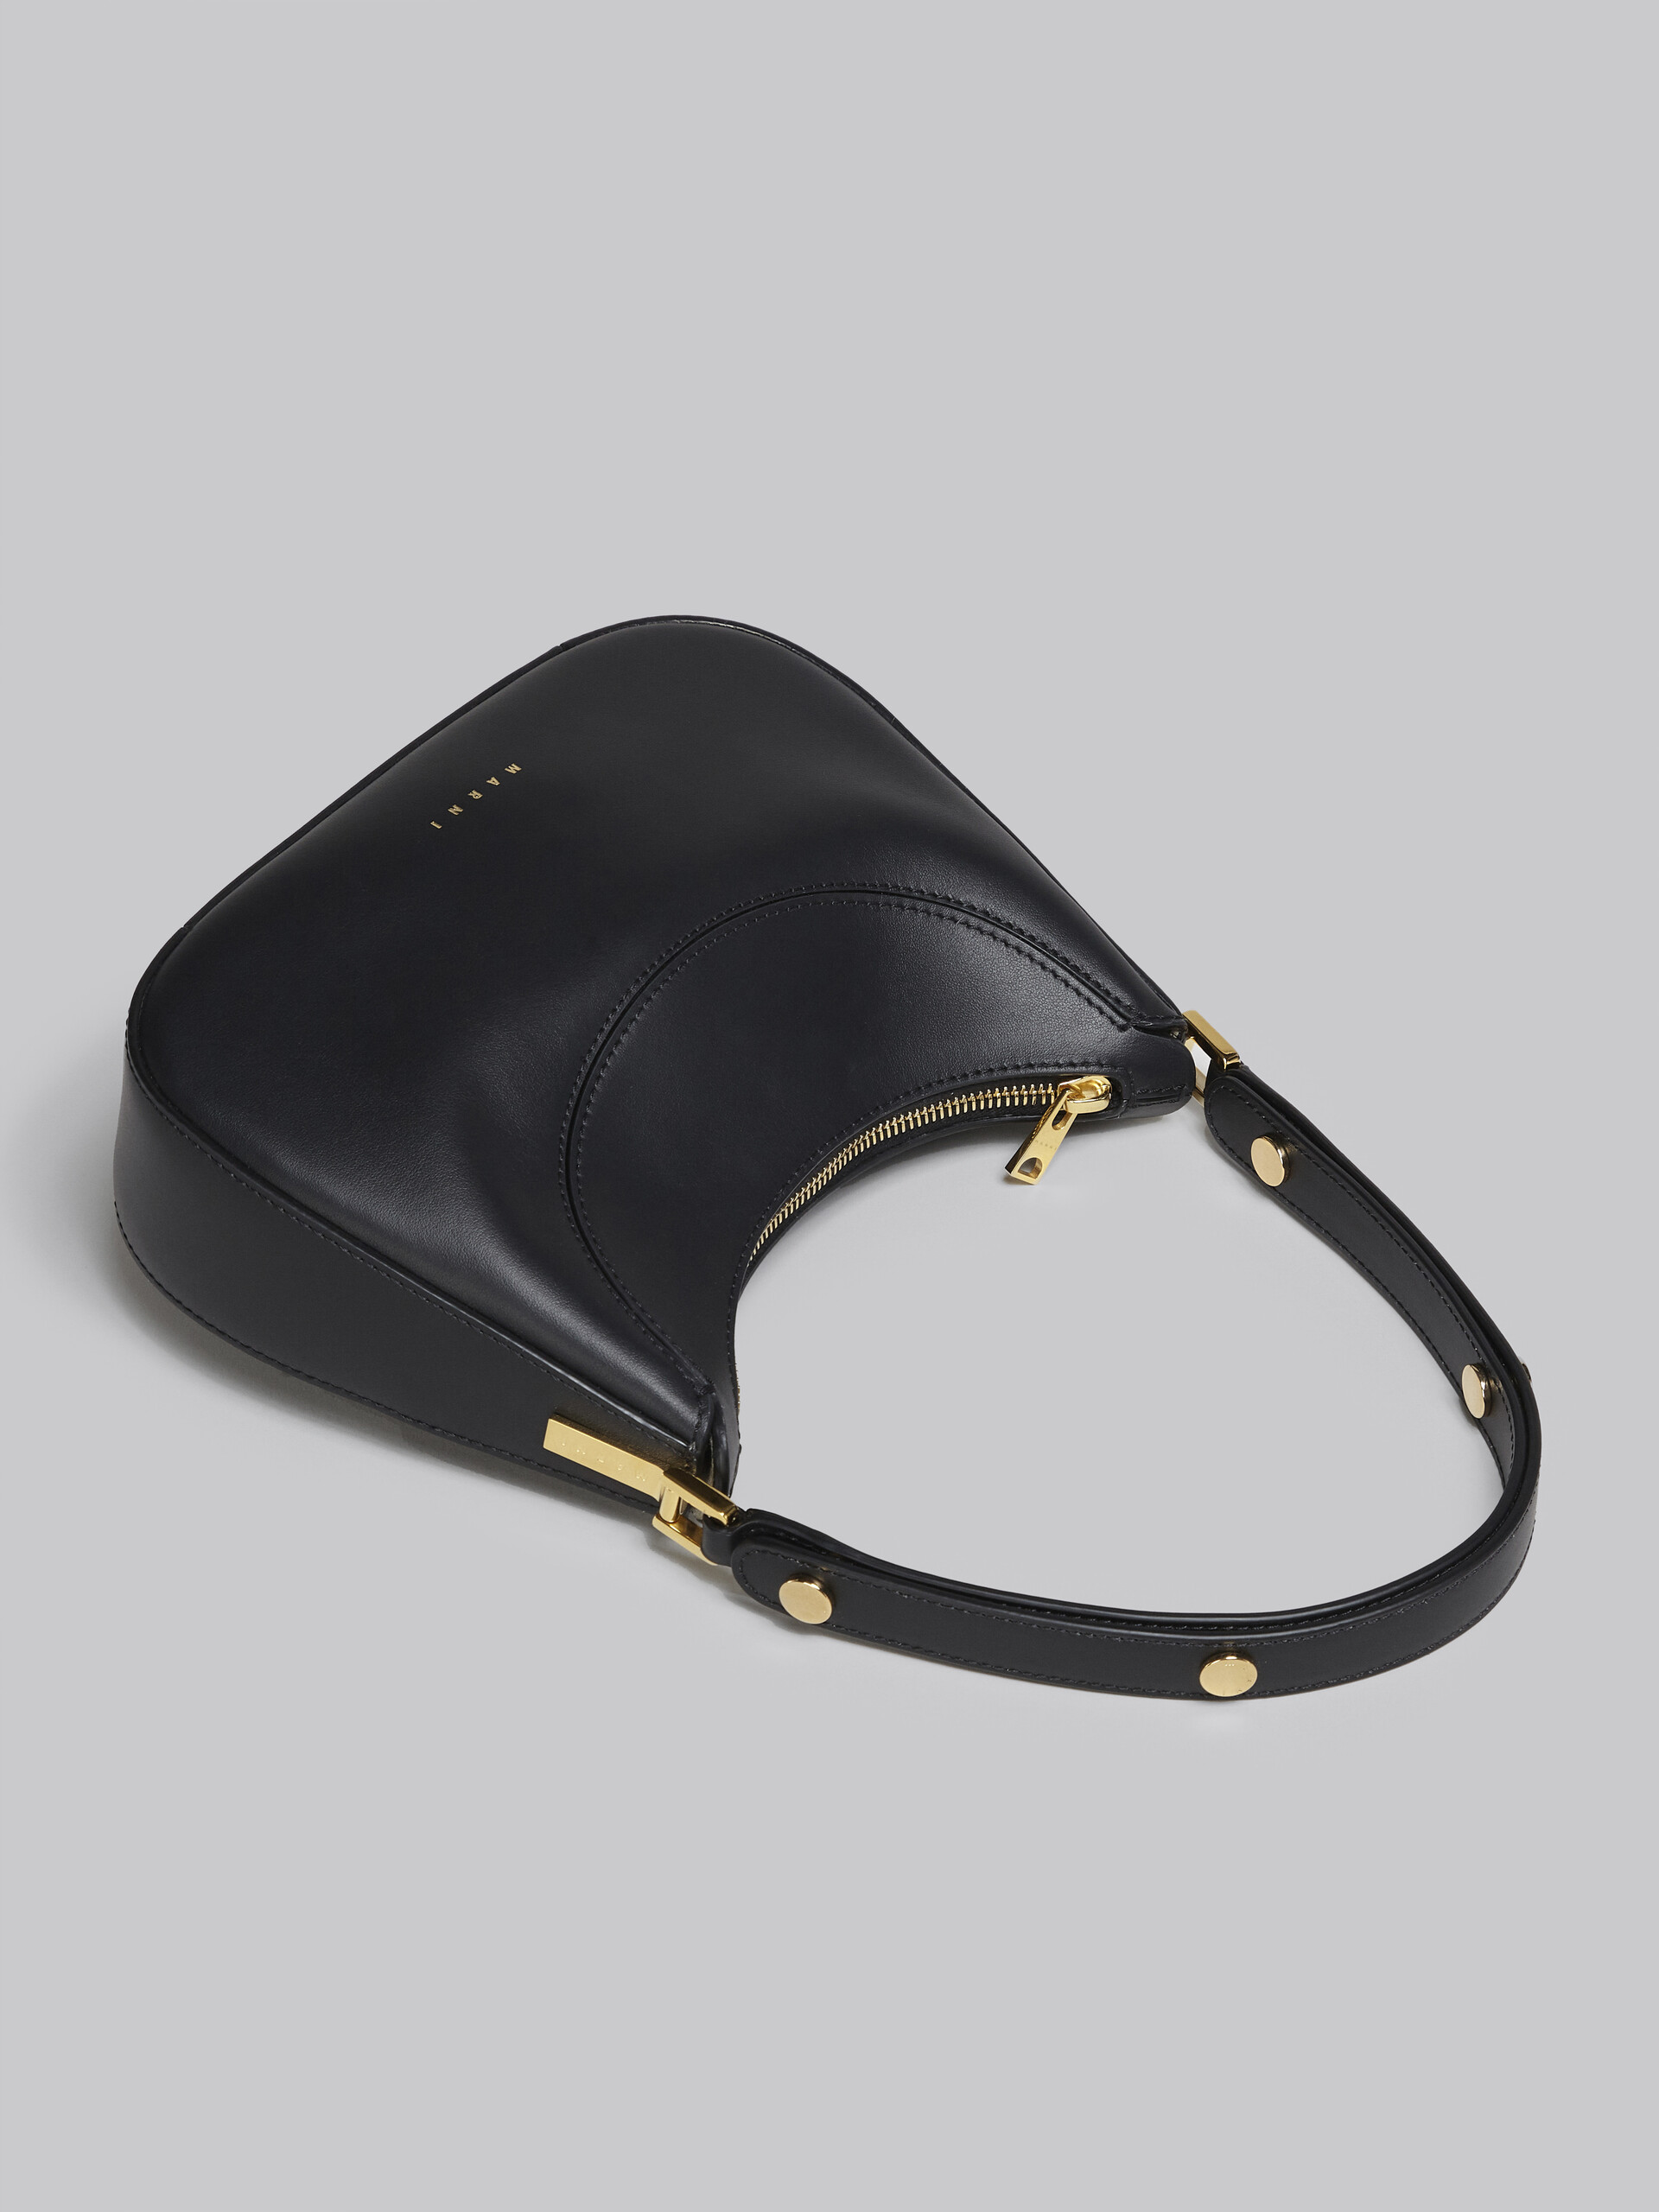 Milano mini bag in black leather - Handbag - Image 5